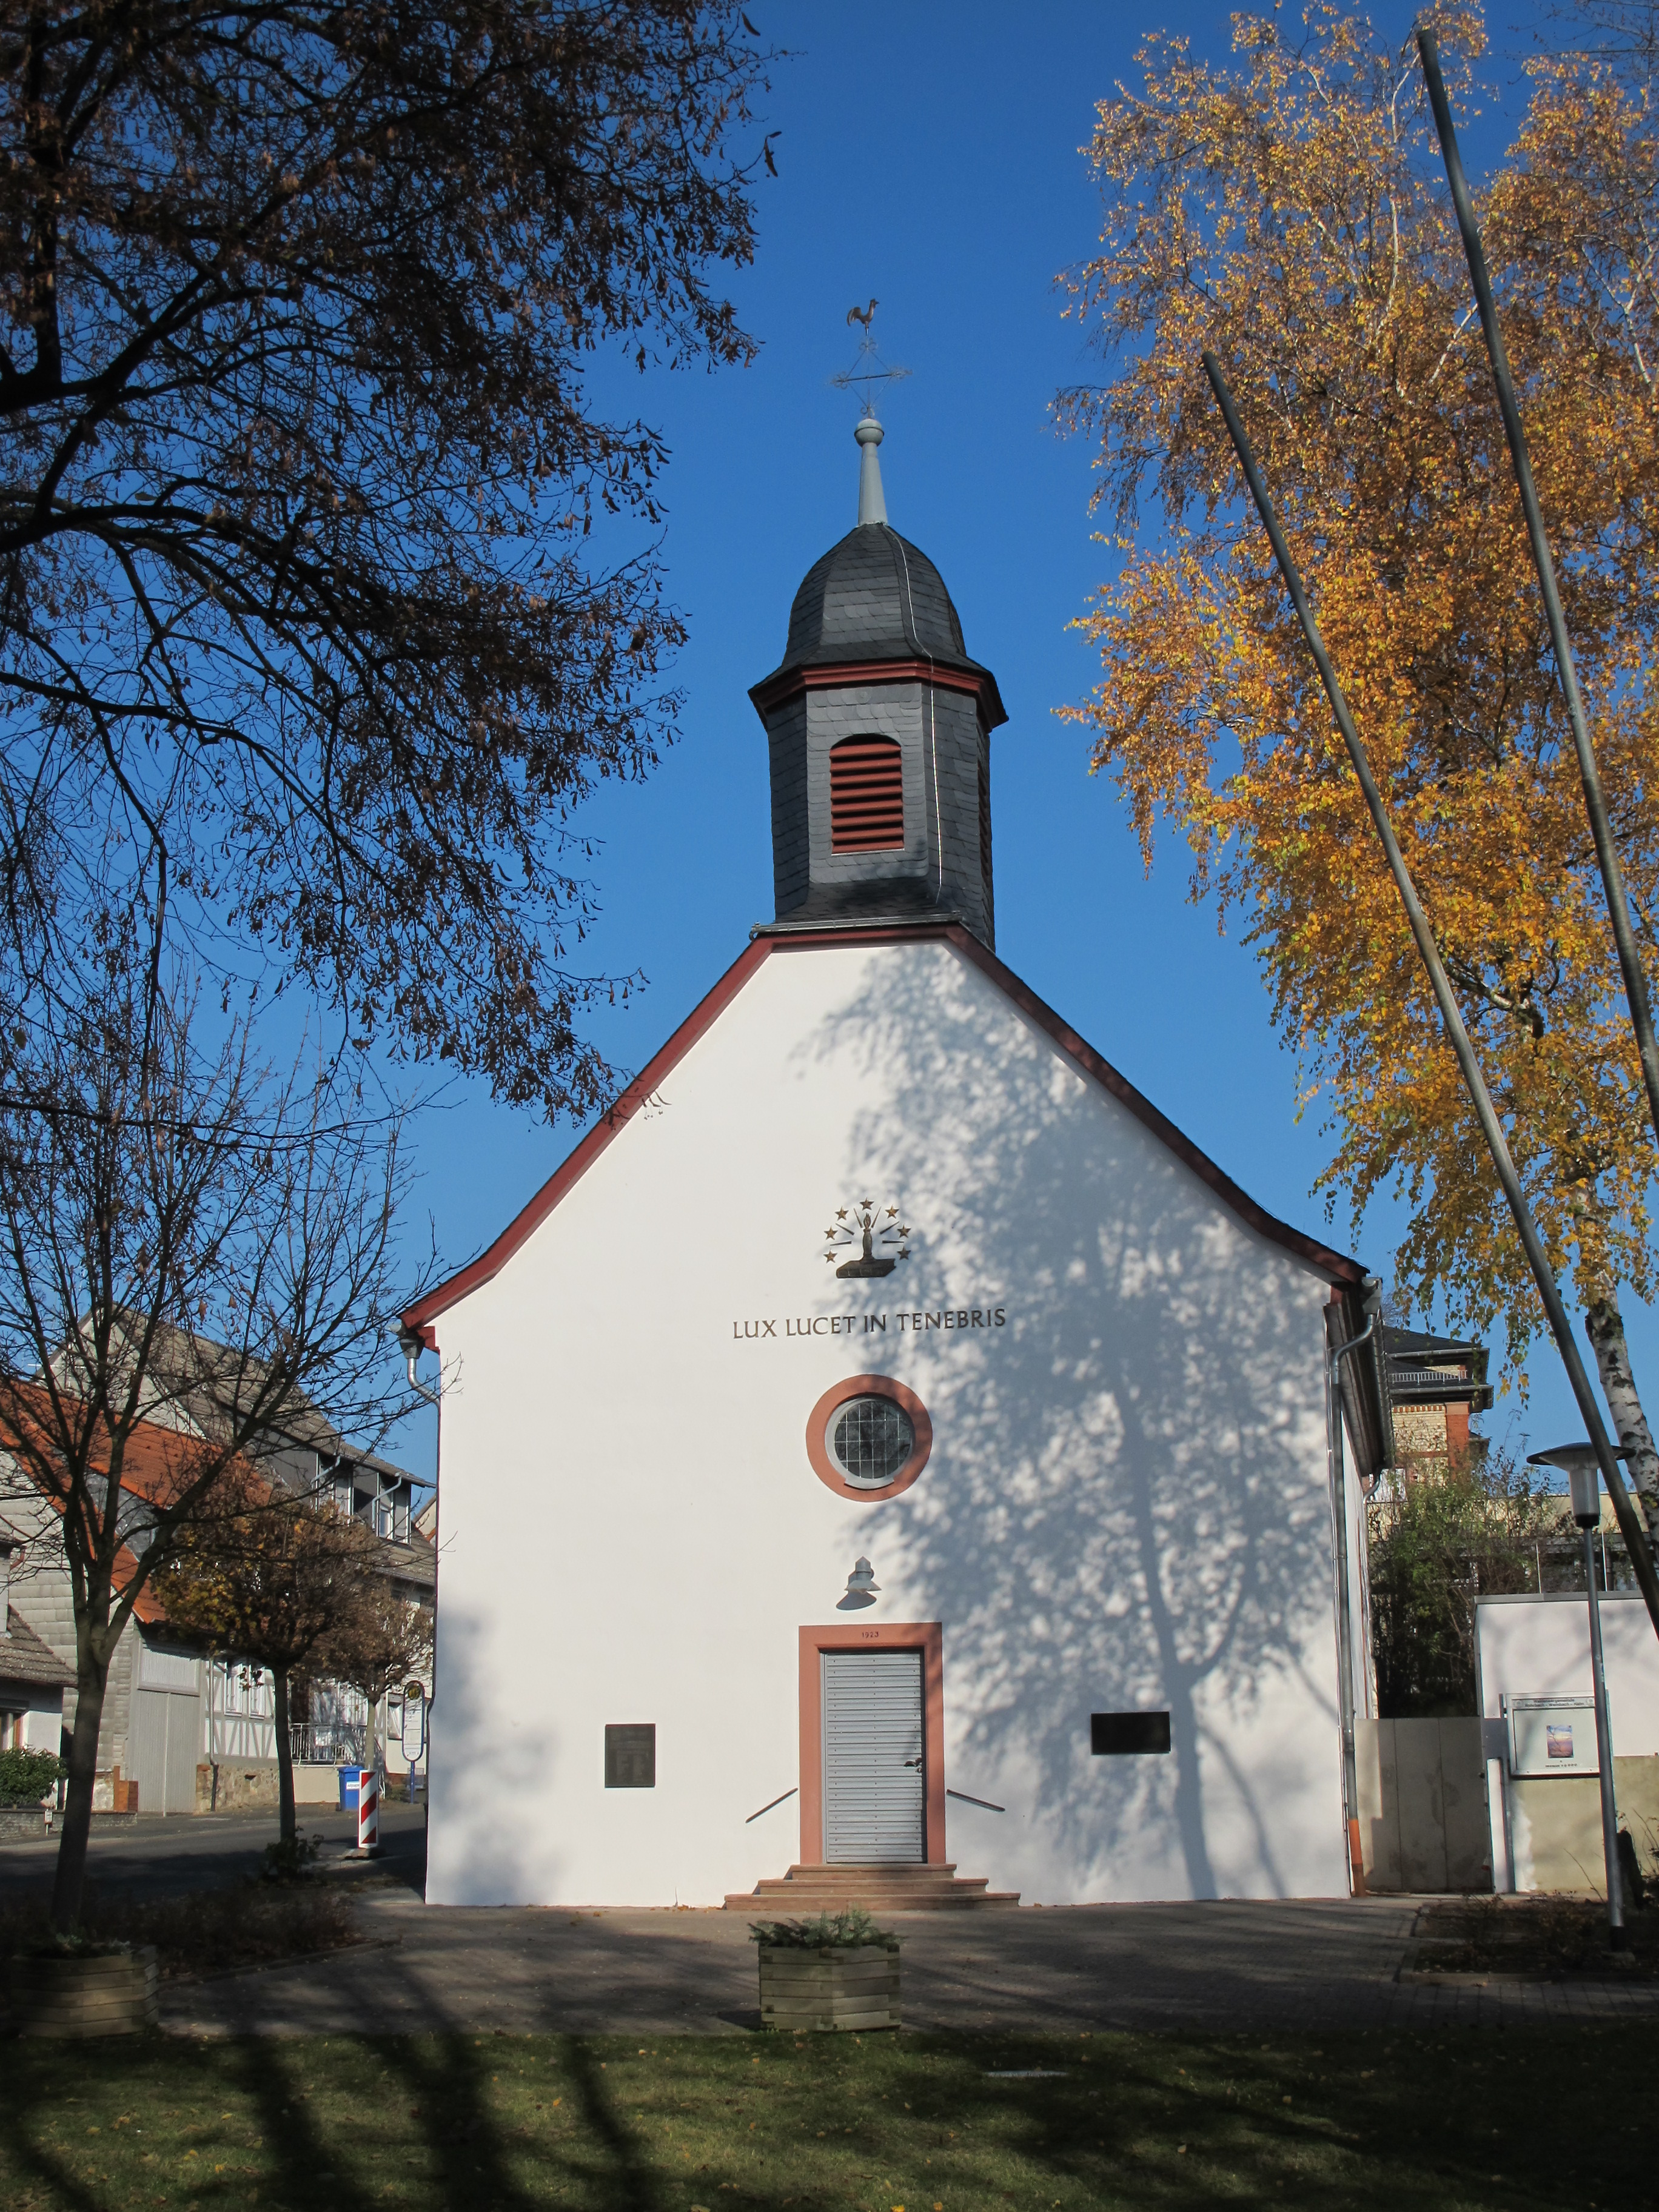 Bei der Waldenserkirche Rohrbach handelt es sich um eine schlichte reformierte Kirche. Am Portal und in der Kirche findet man das Waldenseremblem „Lux lucet in tenebris“. Die heutige Kirche ist bereits die zweite Waldenserkirche an dieser Stelle. Die erst